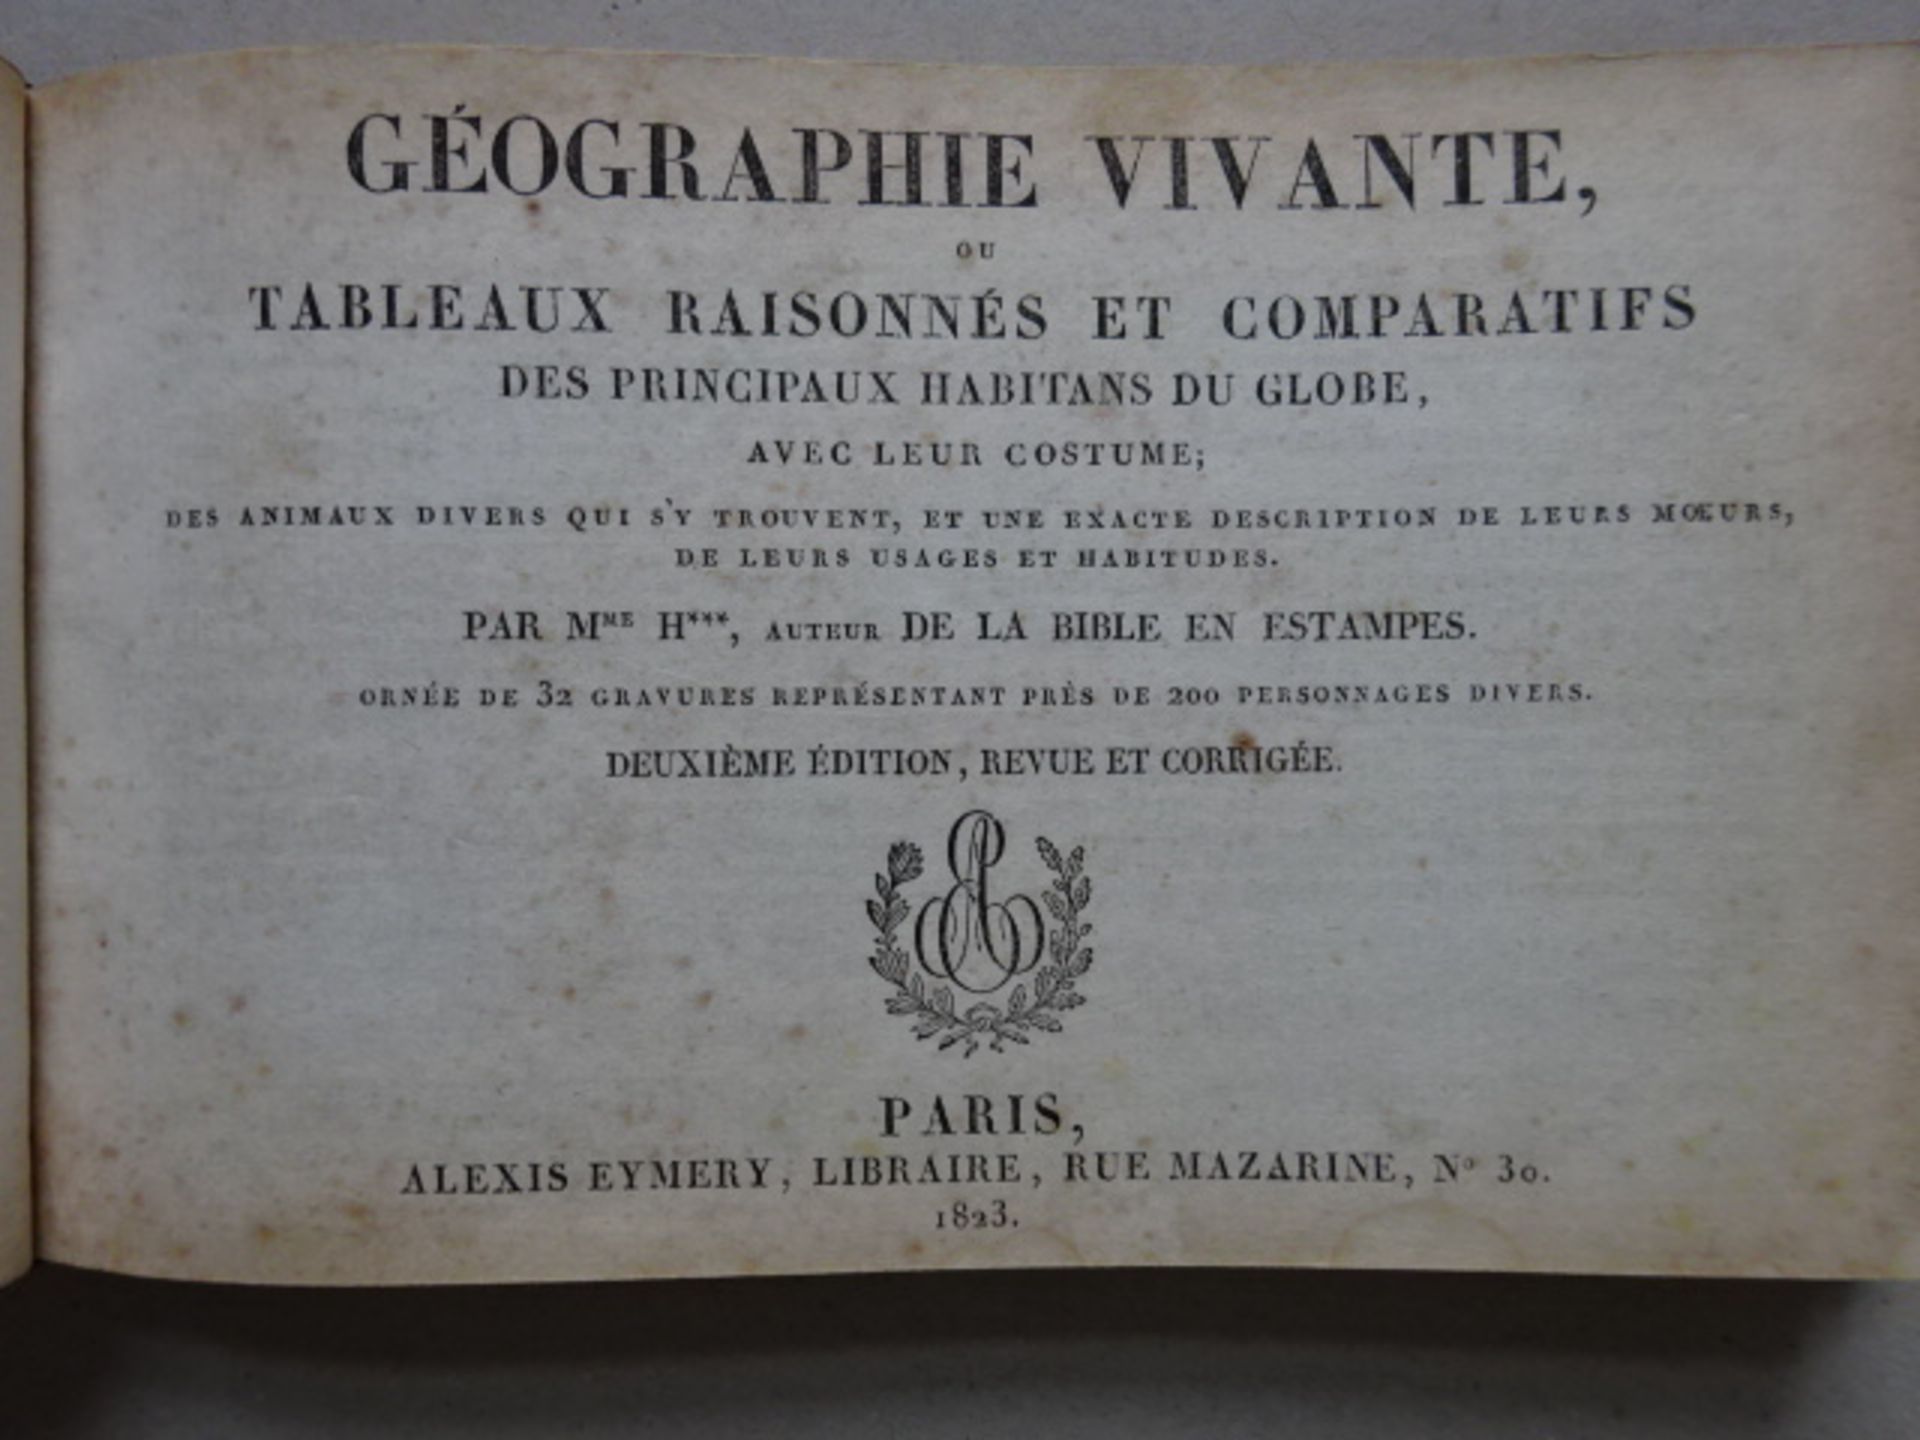 Géographie vivante, 1823 - Image 3 of 6